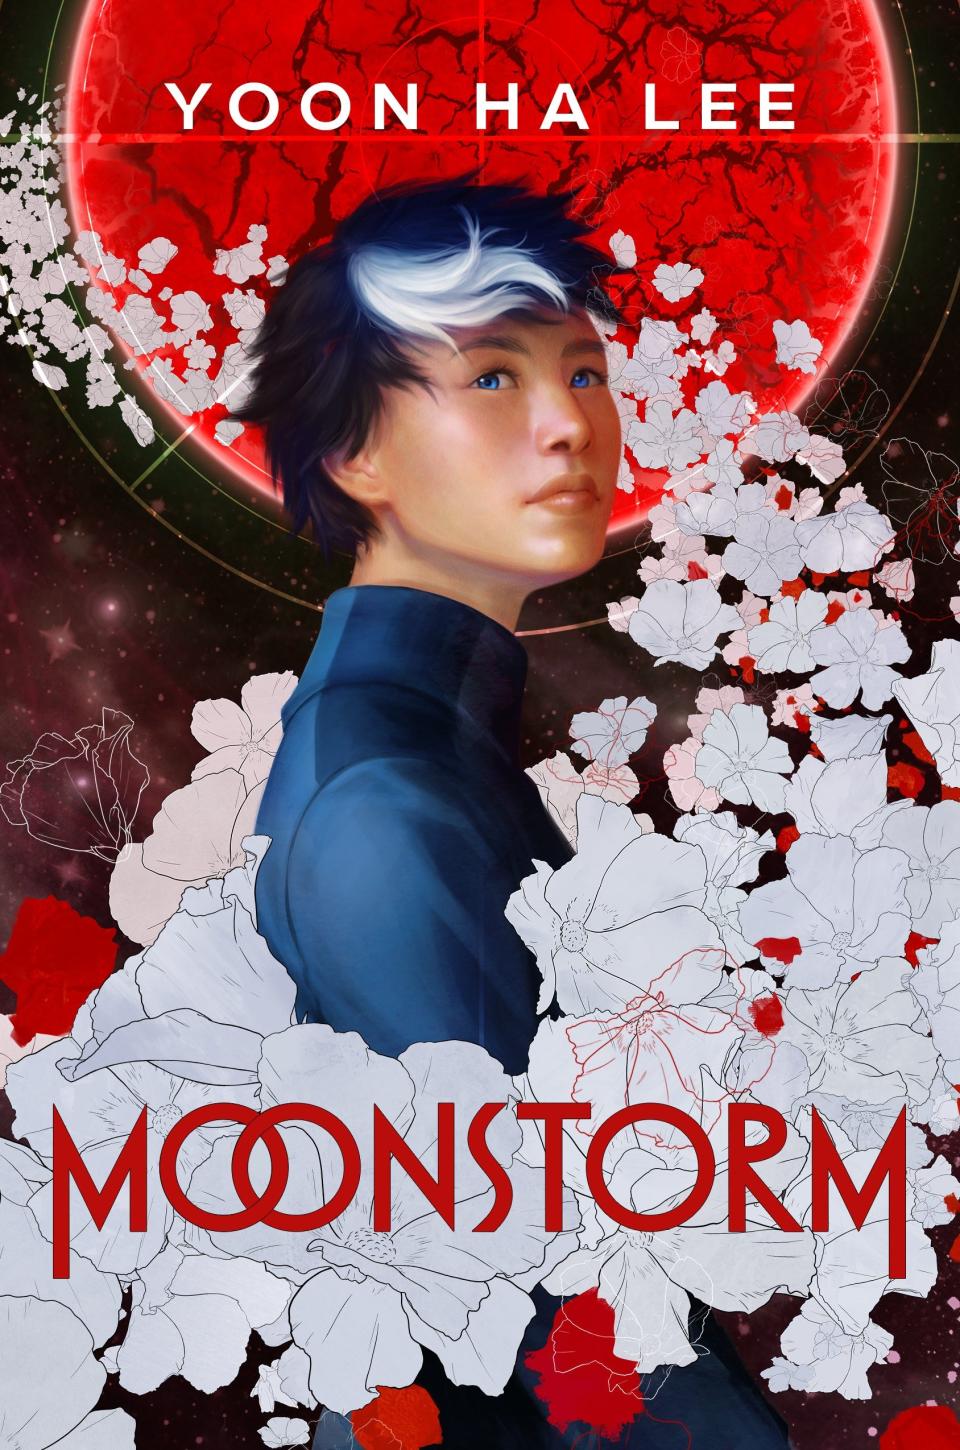 Moonstorm. By Yoon Ha Lee.